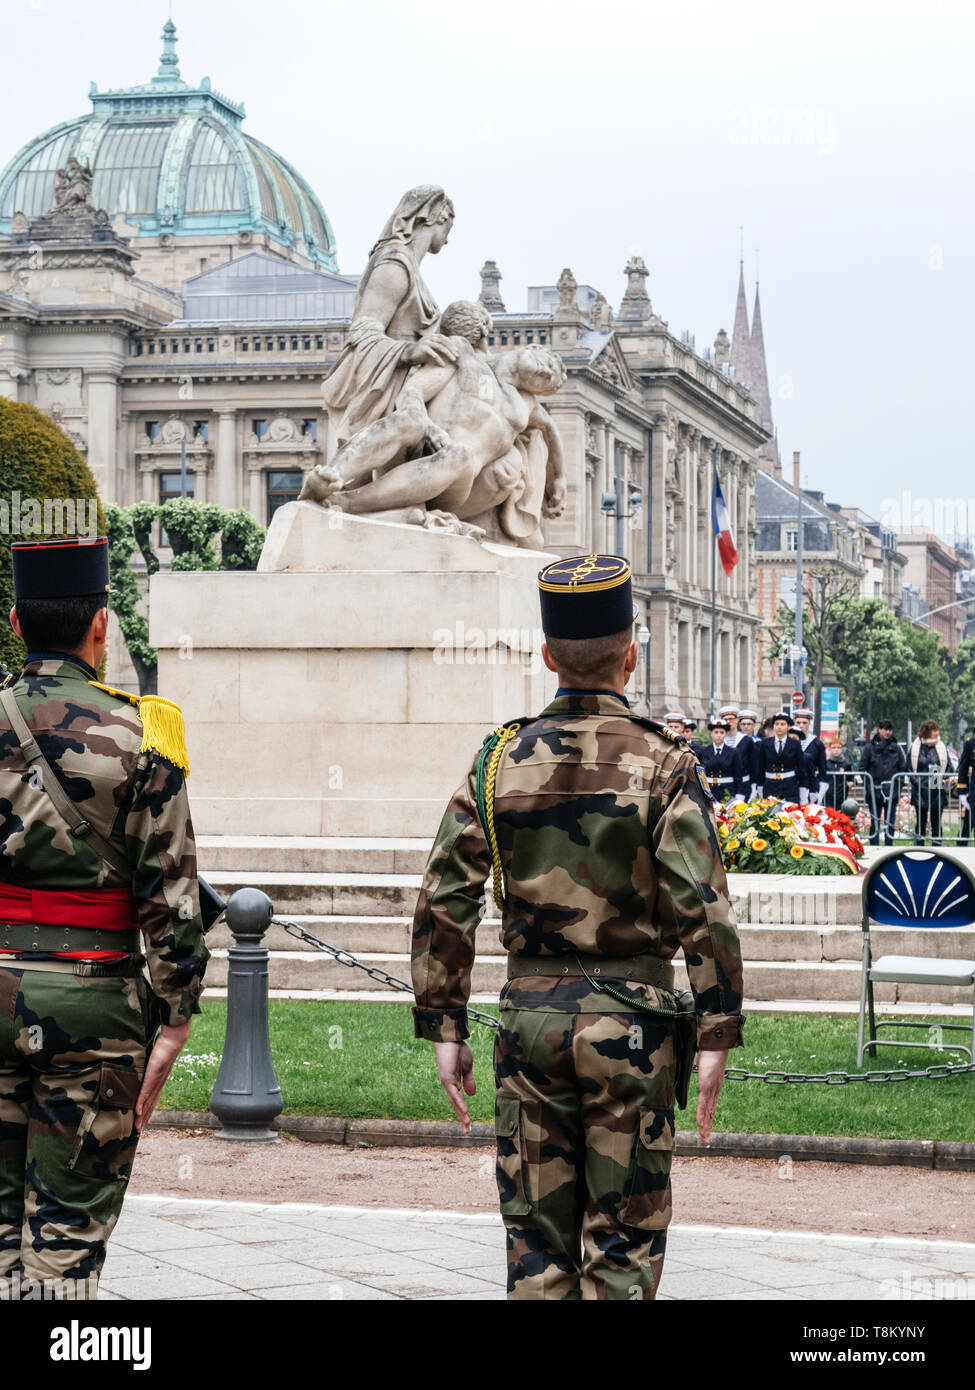 Strasburgo, Francia - 8 Maggio 2017: cerimonia per gli alleati occidentali la Seconda Guerra Mondiale la vittoria armistizio in Europa i soldati davanti a un monumento aux morts de Strasbourg Foto Stock